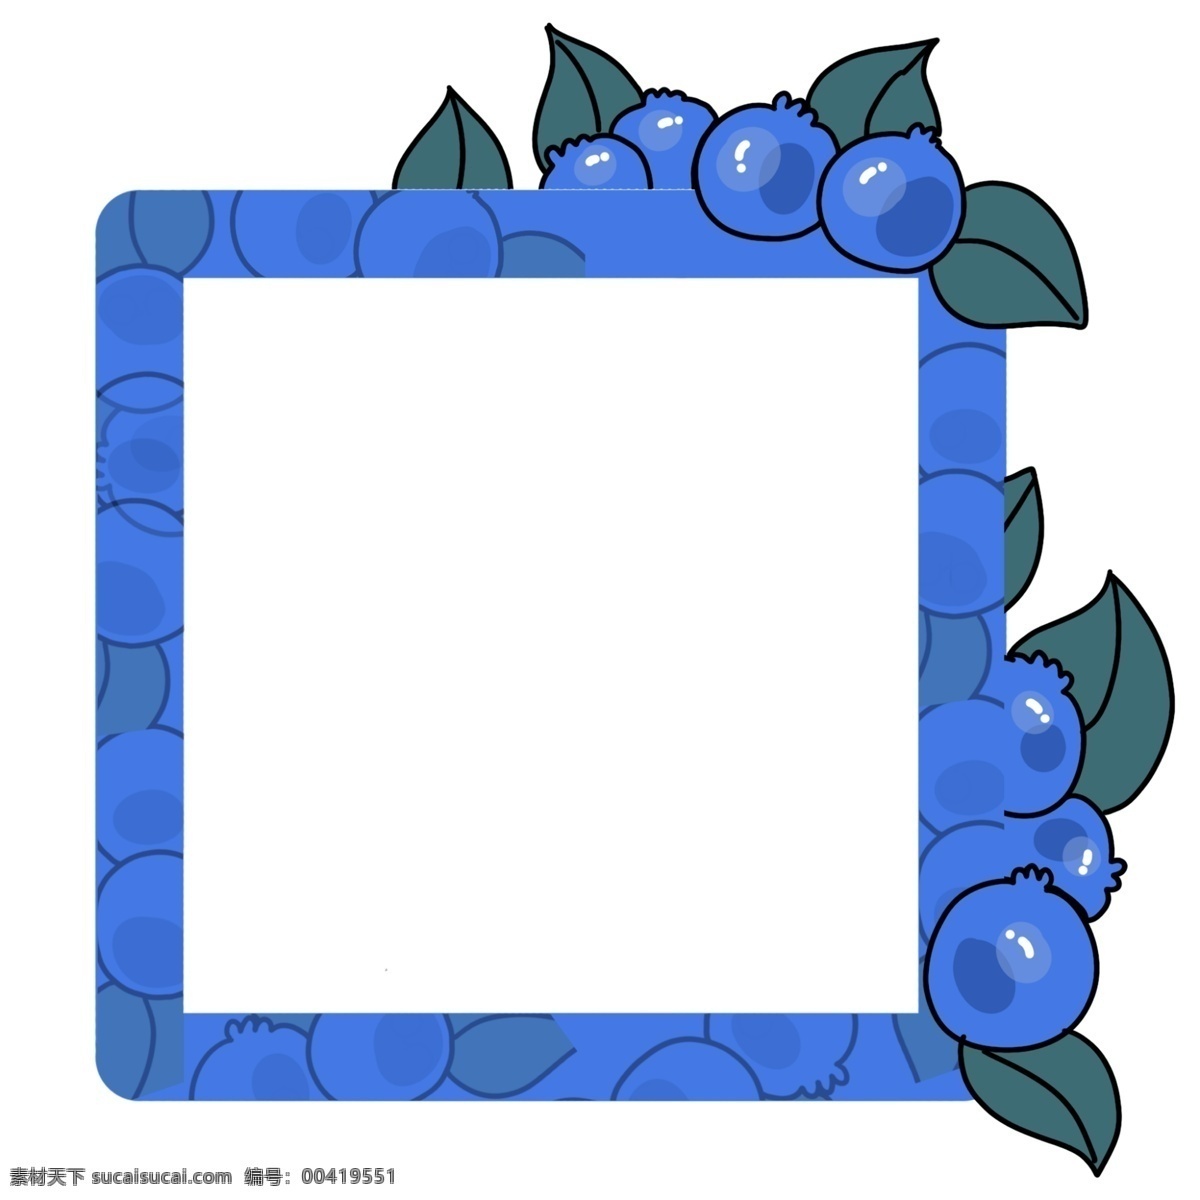 蓝莓 果实 边框 插画 蓝莓果实装饰 二维码边框 蓝莓水果边框 水果 商店 二维码 绿色的叶子 蓝色的蓝莓